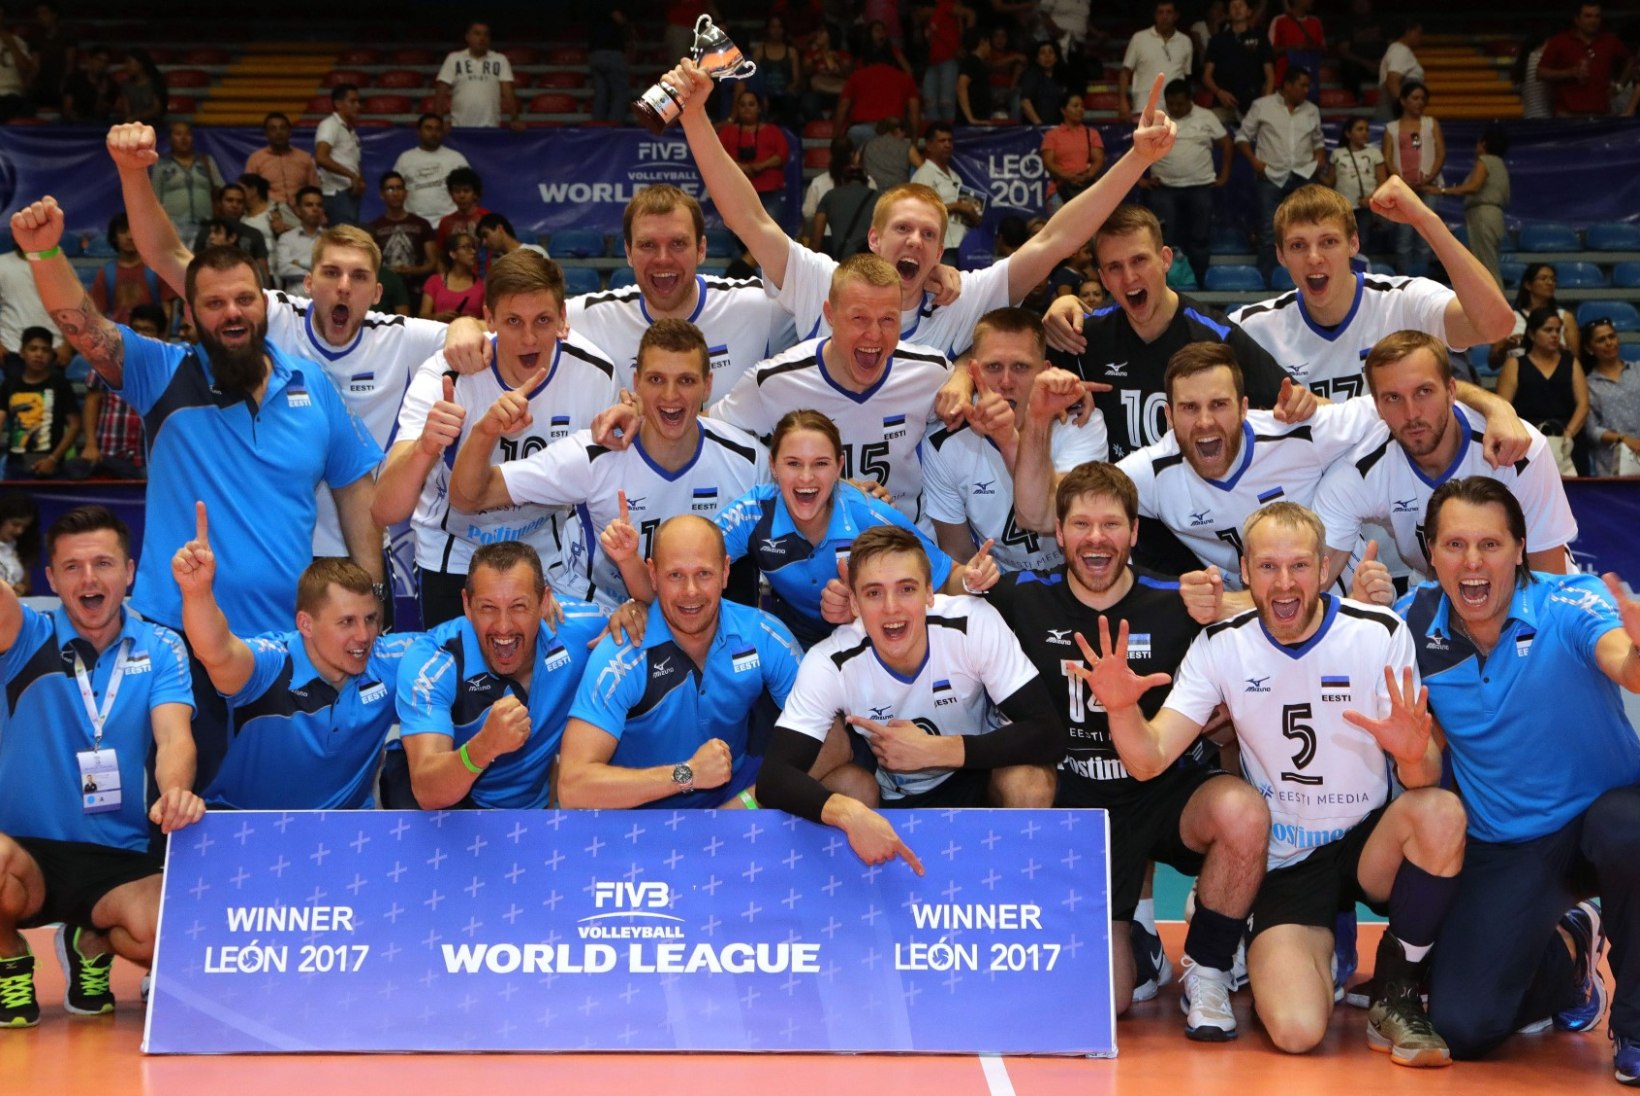 Eesti võitis Maailmaliiga kolmanda grupi. Kui kõva saavutus see on?